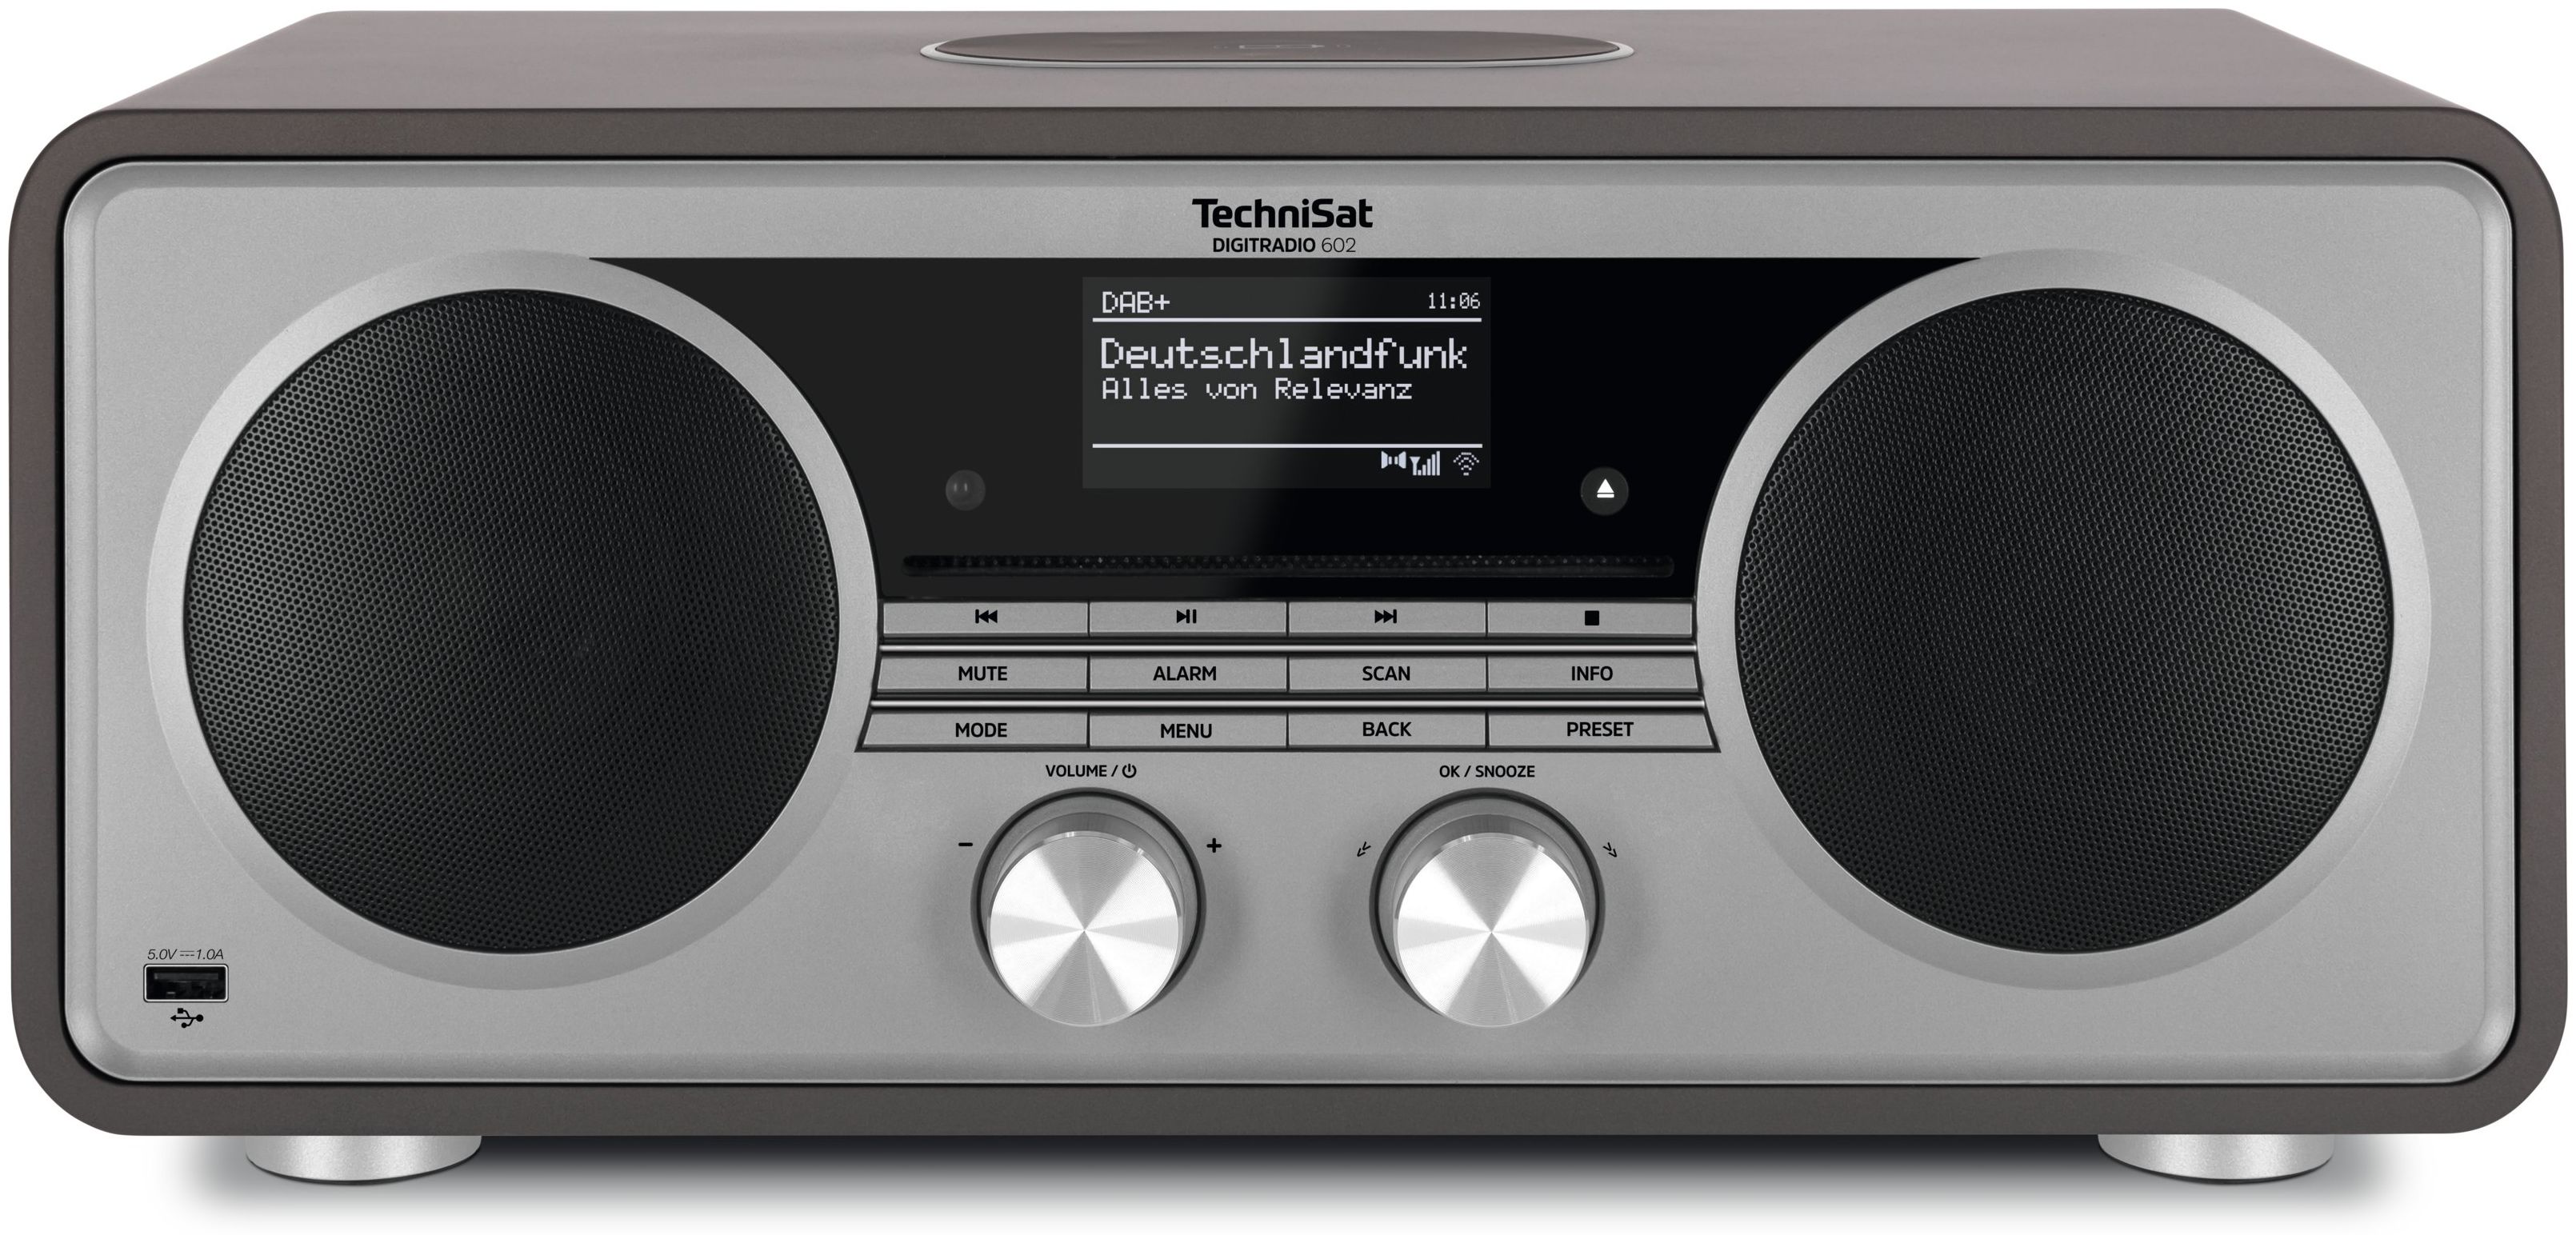 Supergünstiger Preis, große Veröffentlichung TechniSat DigitRadio 602 Bluetooth FM expert Technomarkt Radio DAB+, von Silber) (Anthrazit